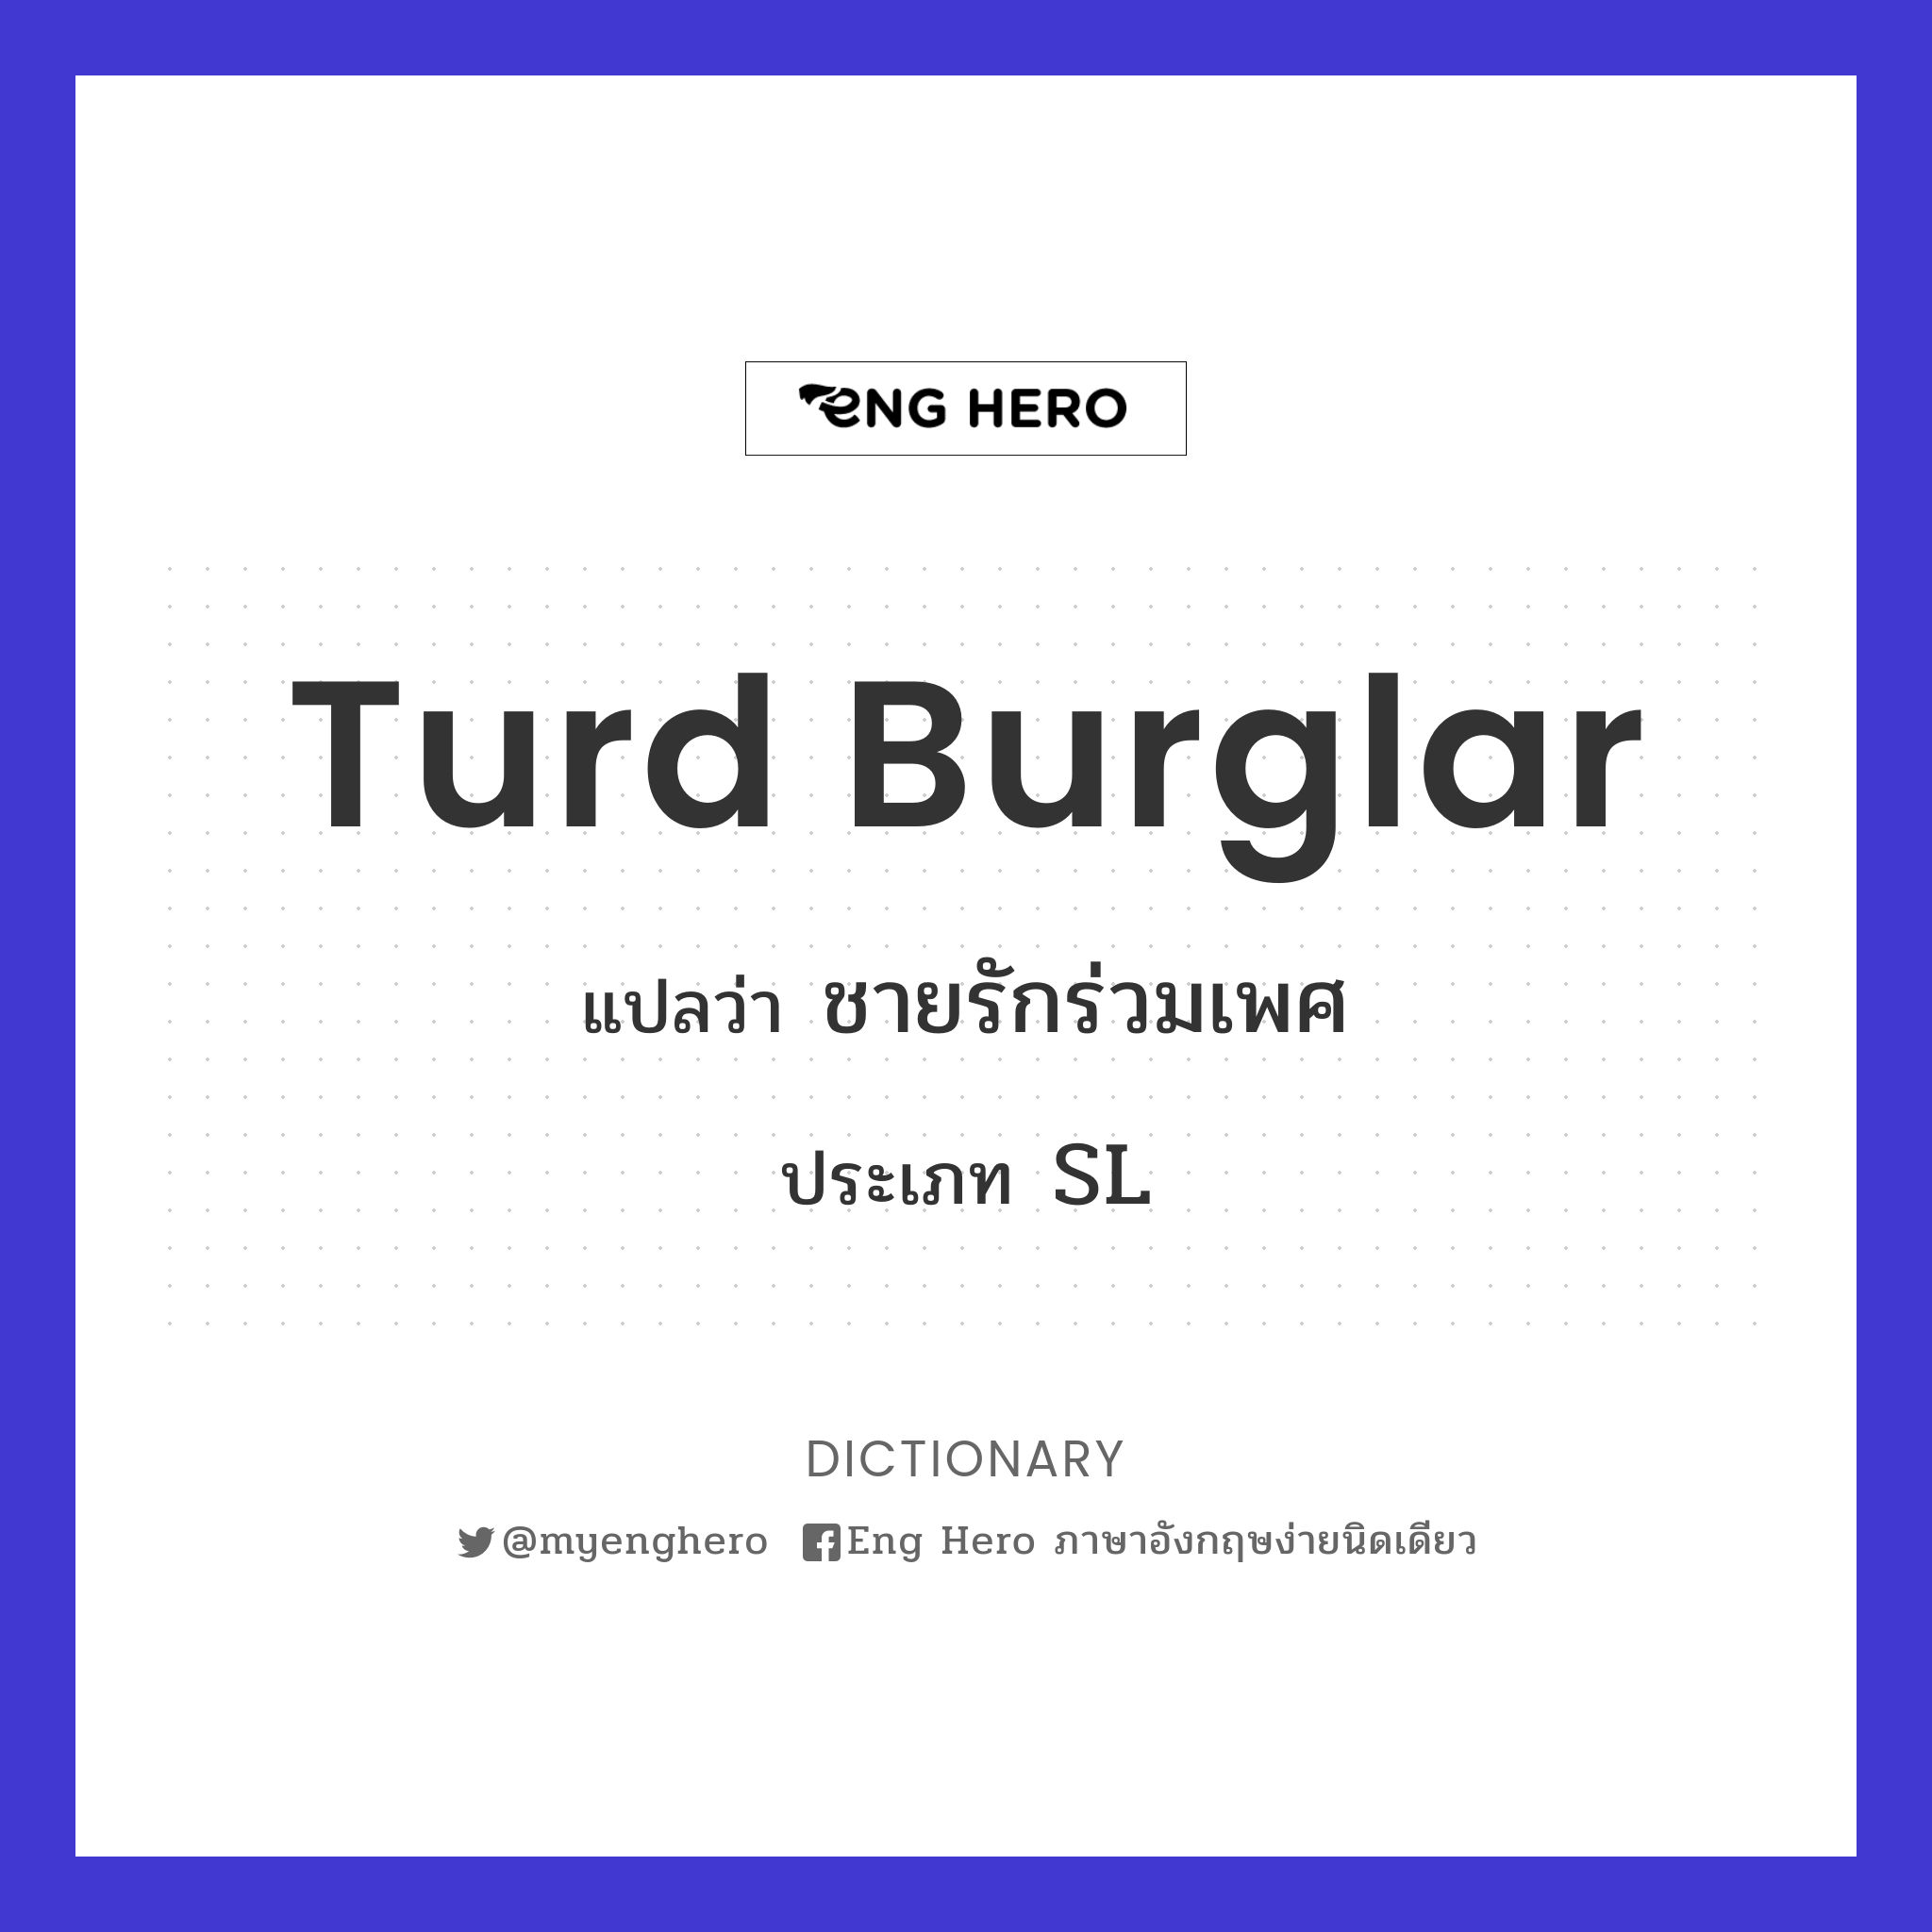 turd burglar